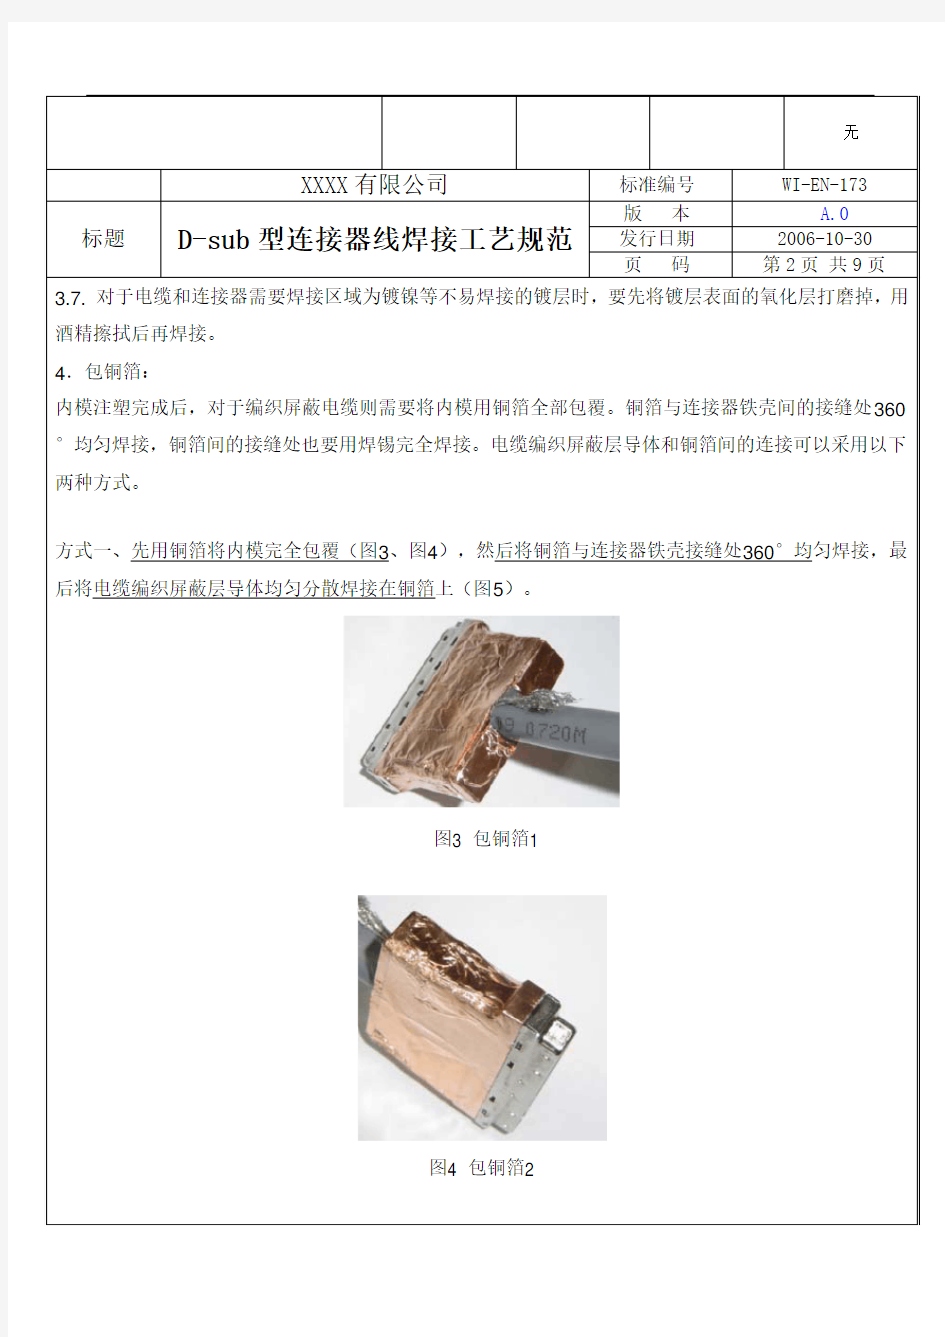 D-sub型连接器 焊接工艺规范